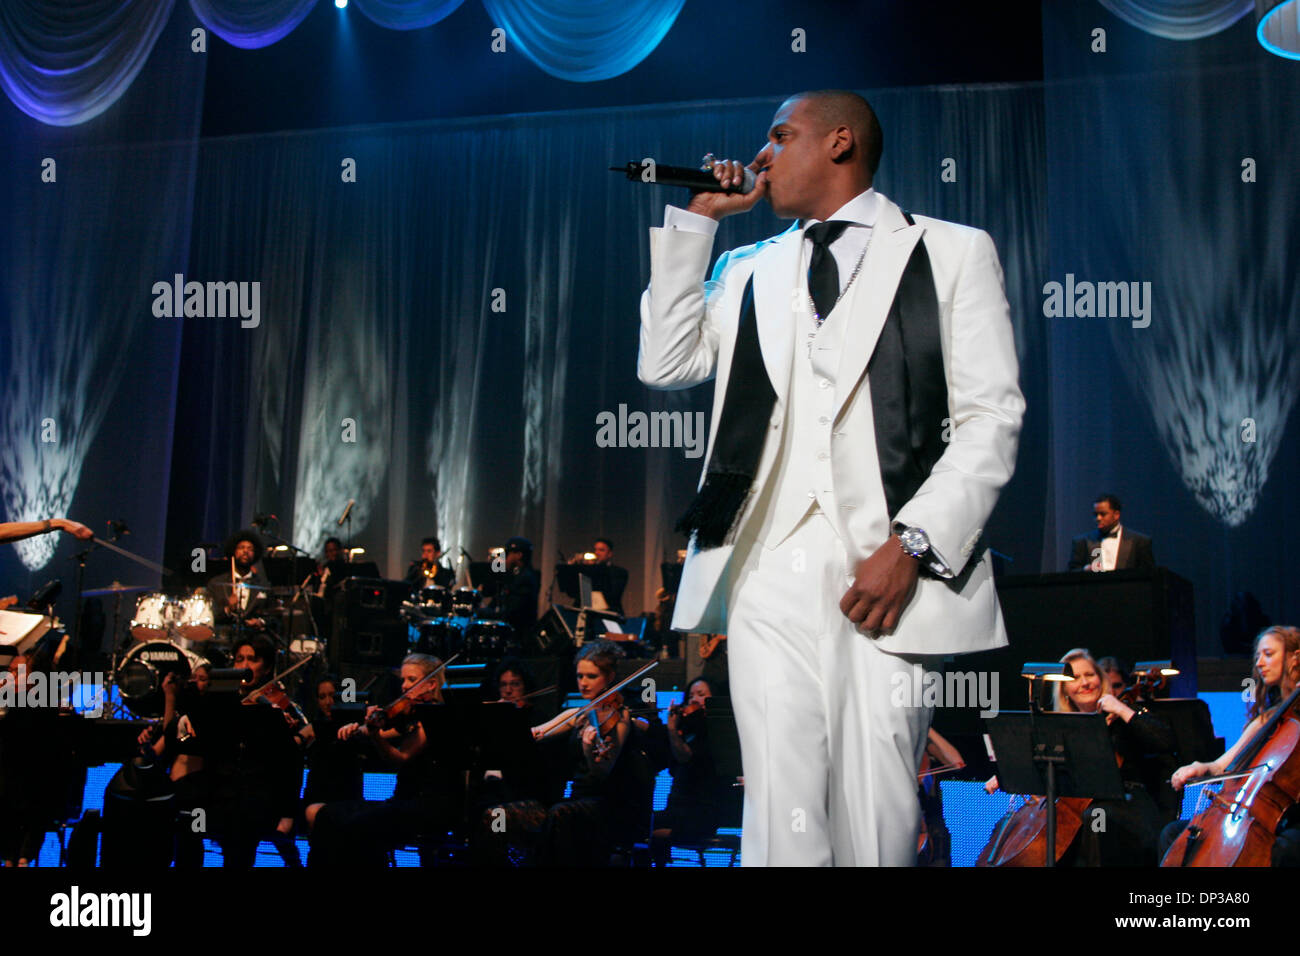 Jun 25, 2006; New York, NY, STATI UNITI D'AMERICA; Jay-Z in esecuzione al  Radio City Music Hall durante il suo ragionevole dubbio Tour. Credito: Foto  di Aviv piccole/ZUMA premere. (©) Copyright 2006